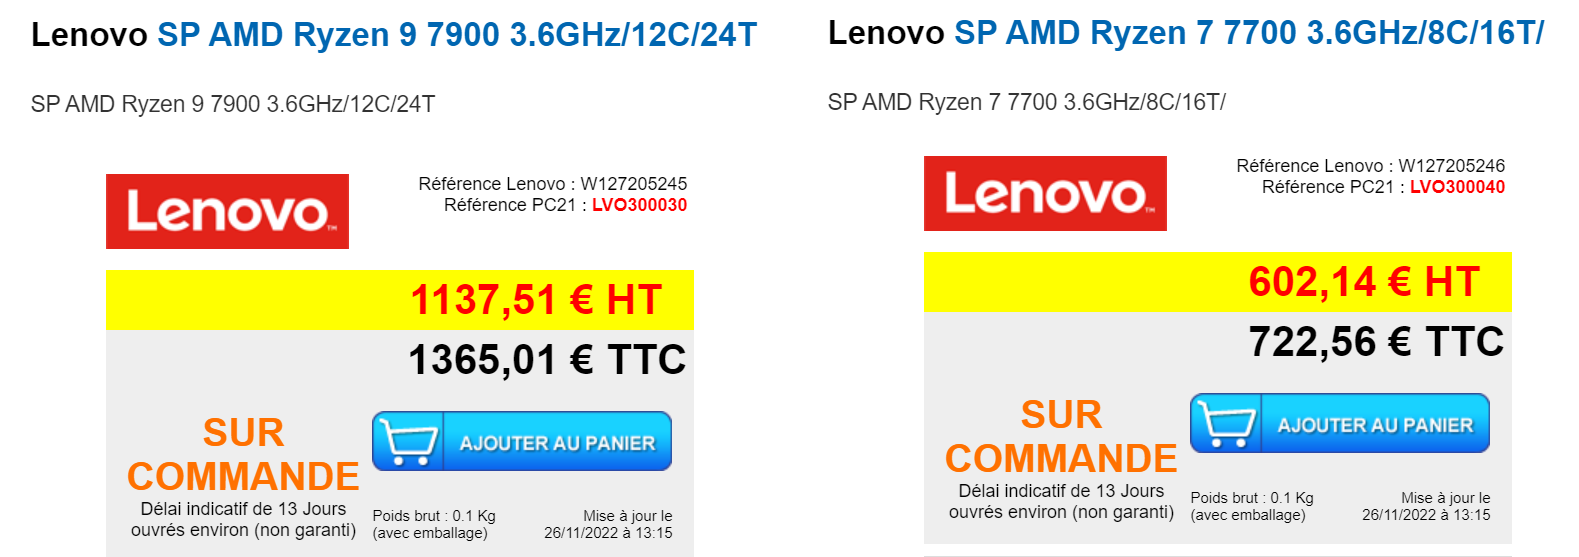 amd ryzen 7900 7700 pc21fr เผยเอเอ็มดีเตรียมเปิดตัวซีพียู AMD Ryzen 9 7900 และ Ryzen 7 7700 ในรุ่น Non X เน้นกินไฟต่ำ 65W ในเร็วๆ นี้ 